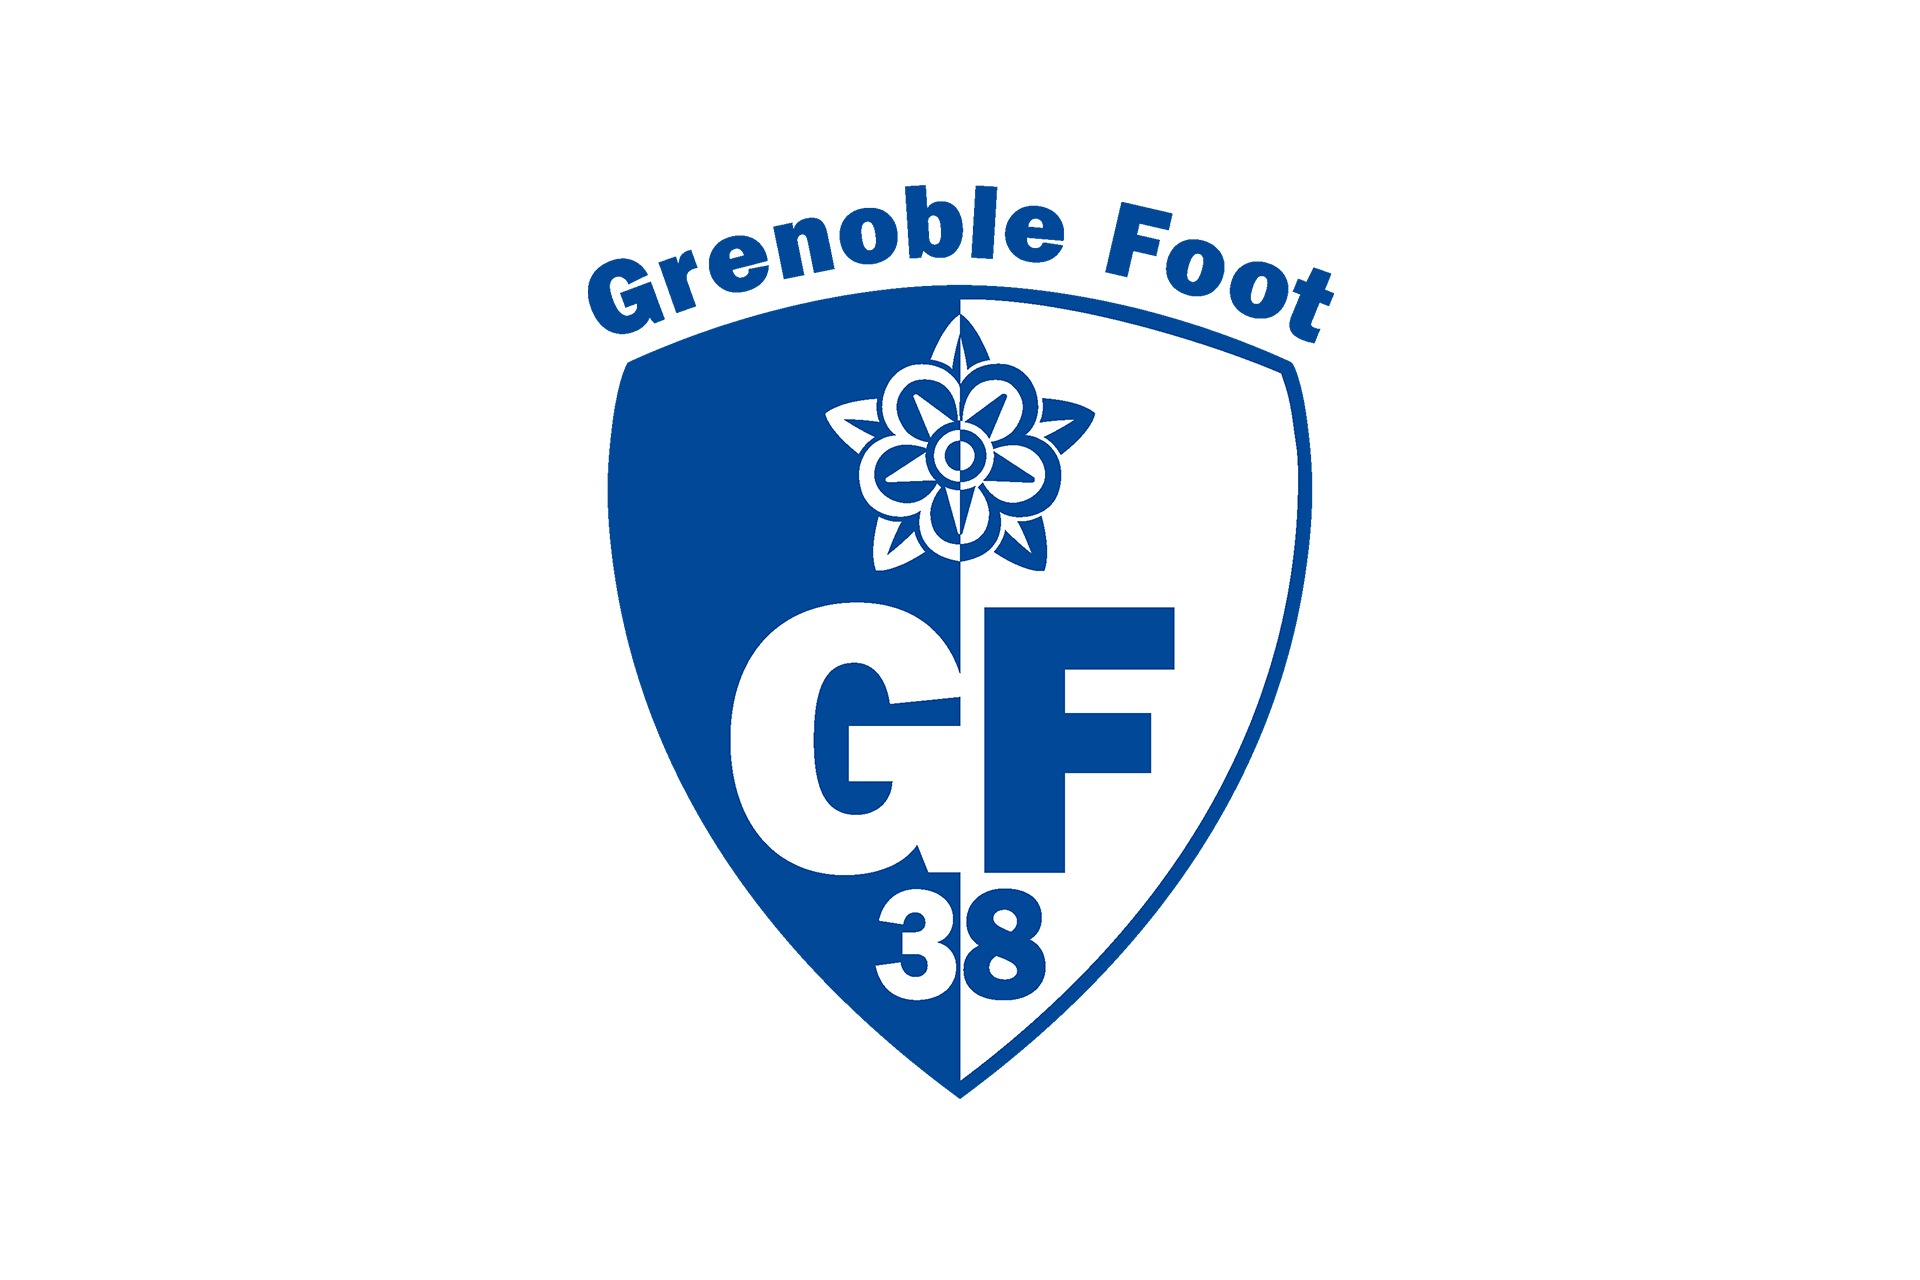 Chamrousse logo partenaire grenoble foot gf 38 bonbon station montagne grenoble isère alpes france - © GF38